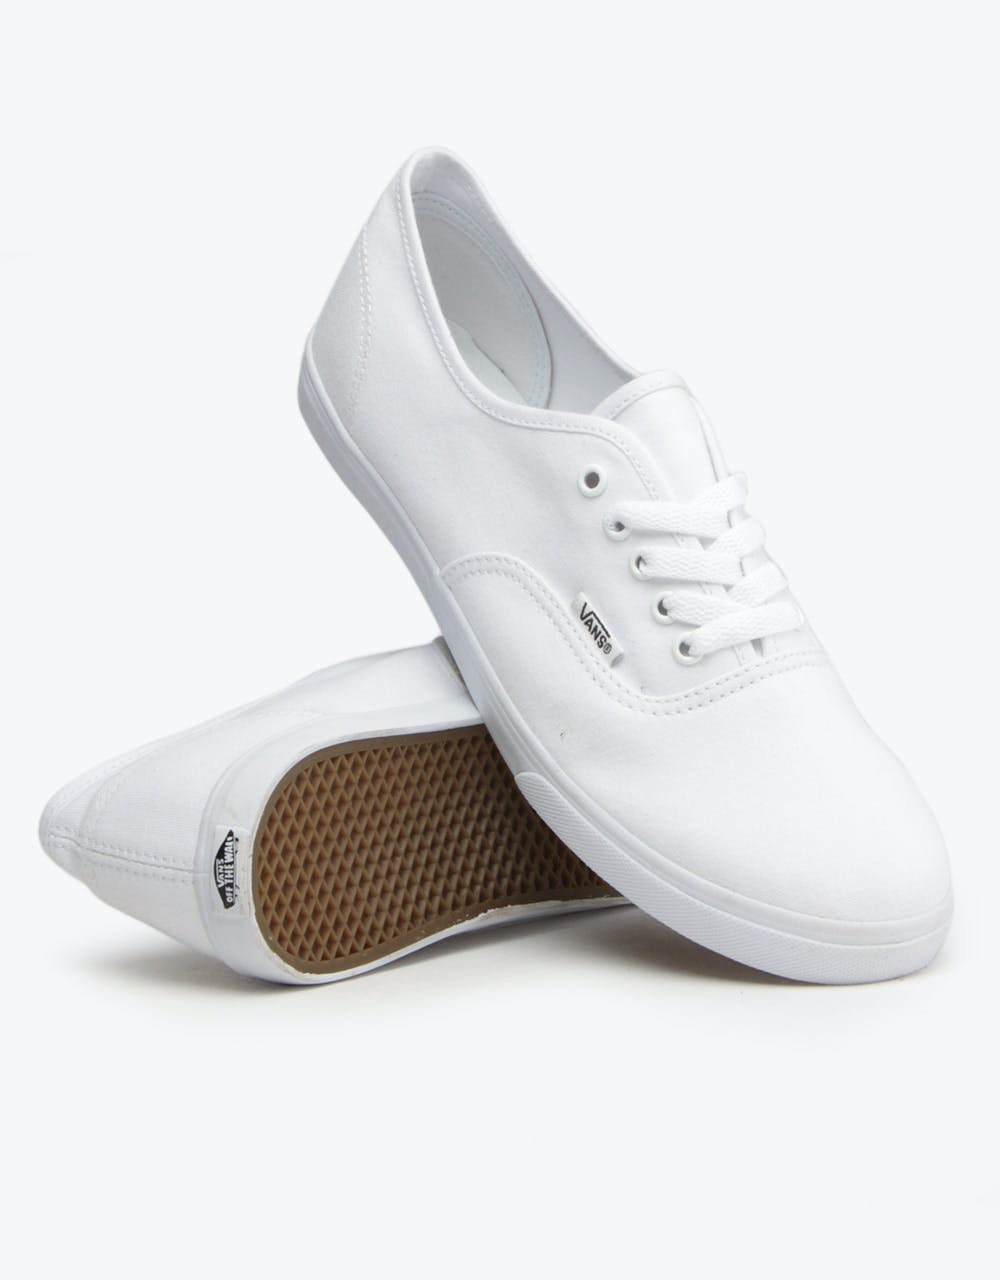 Vans Authentic Lo Pro Shoes - True White/True White